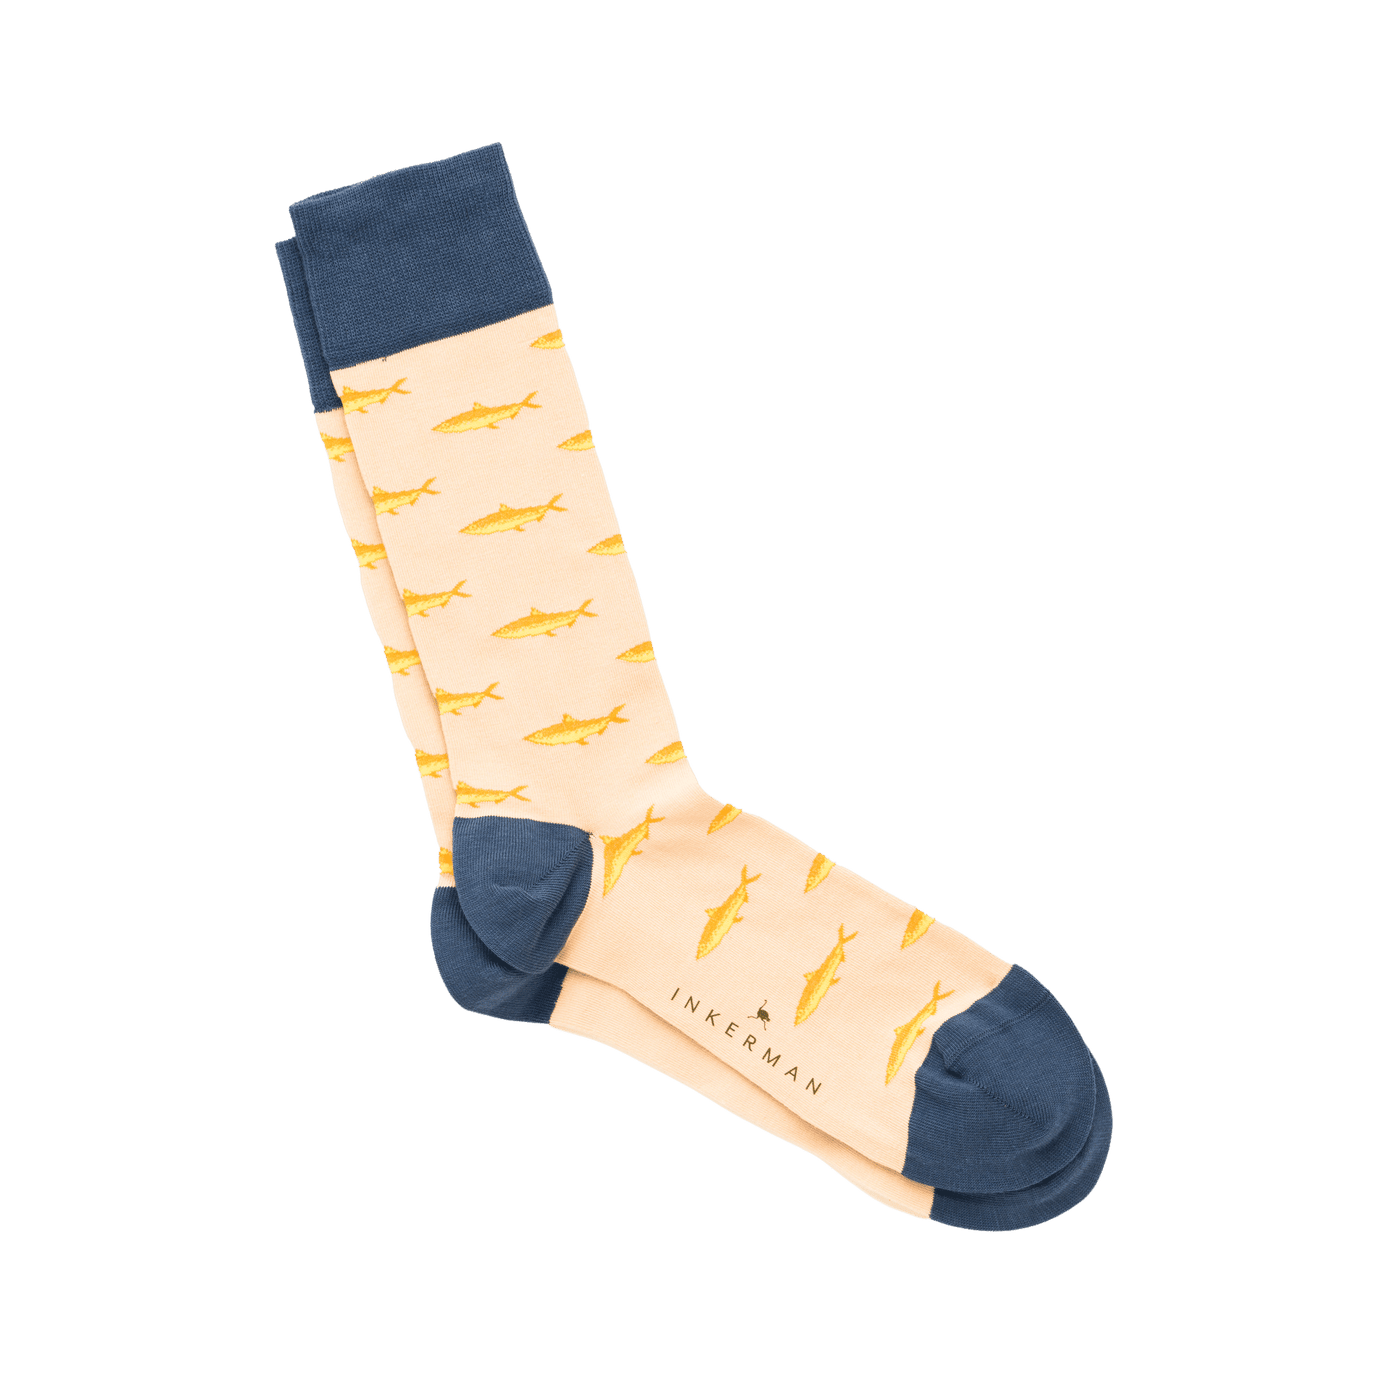 Mackerel Socks